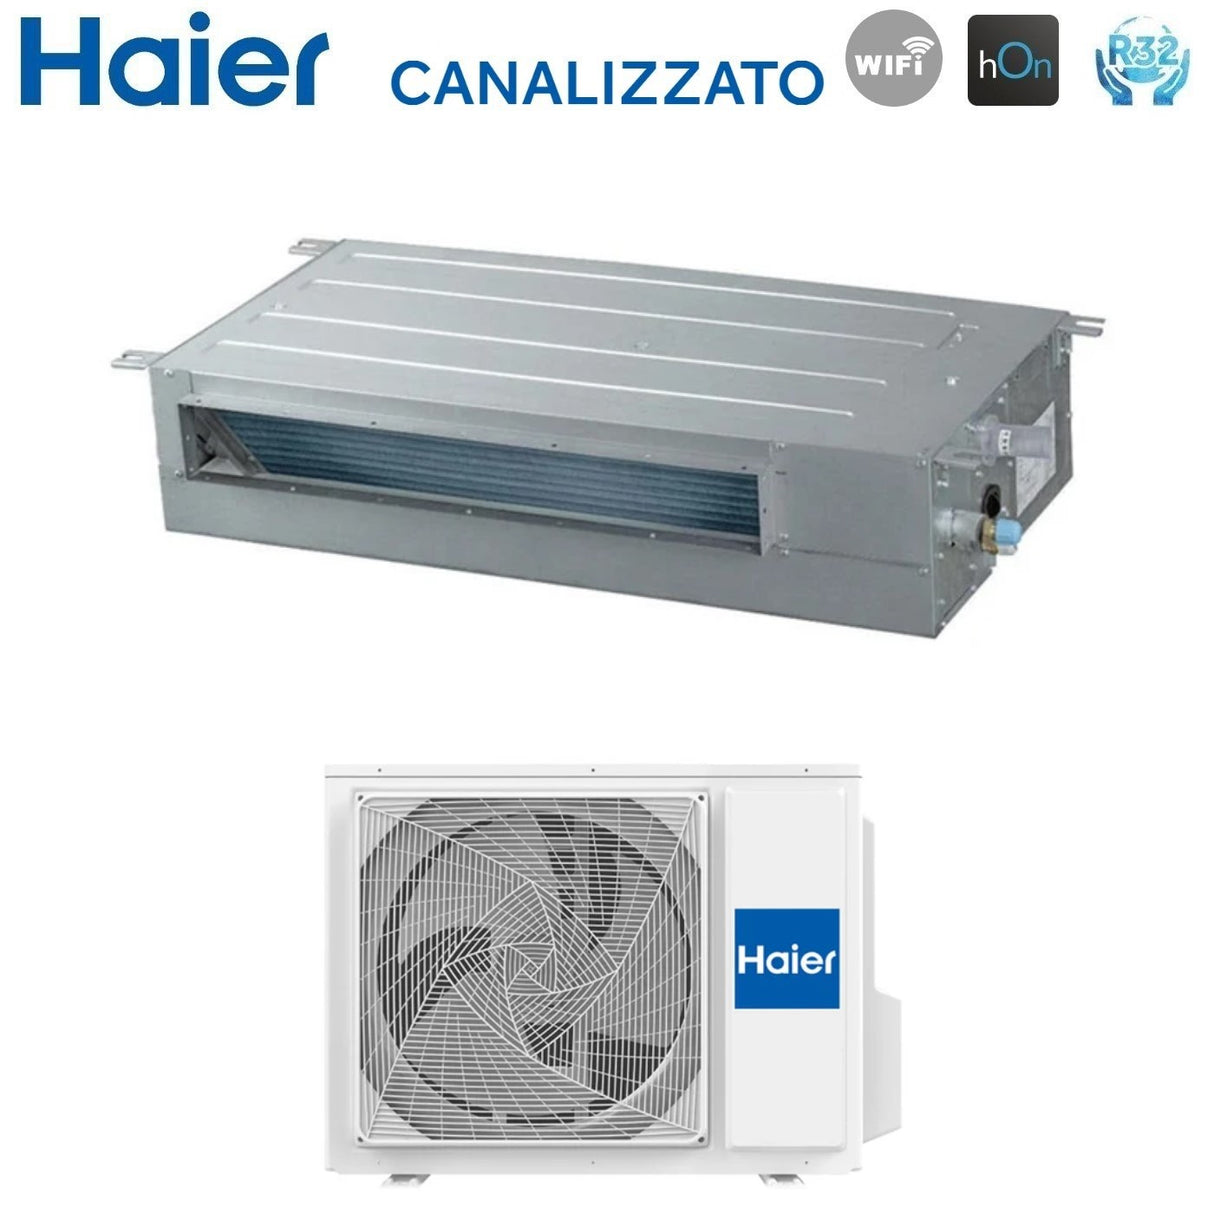 immagine-6-haier-climatizzatore-condizionatore-haier-inverter-canalizzato-slim-bassa-prevalenza-24000-btu-ad71s2ss1fa-1u71s2sr2fa-r-32-wi-fi-integrato-aa